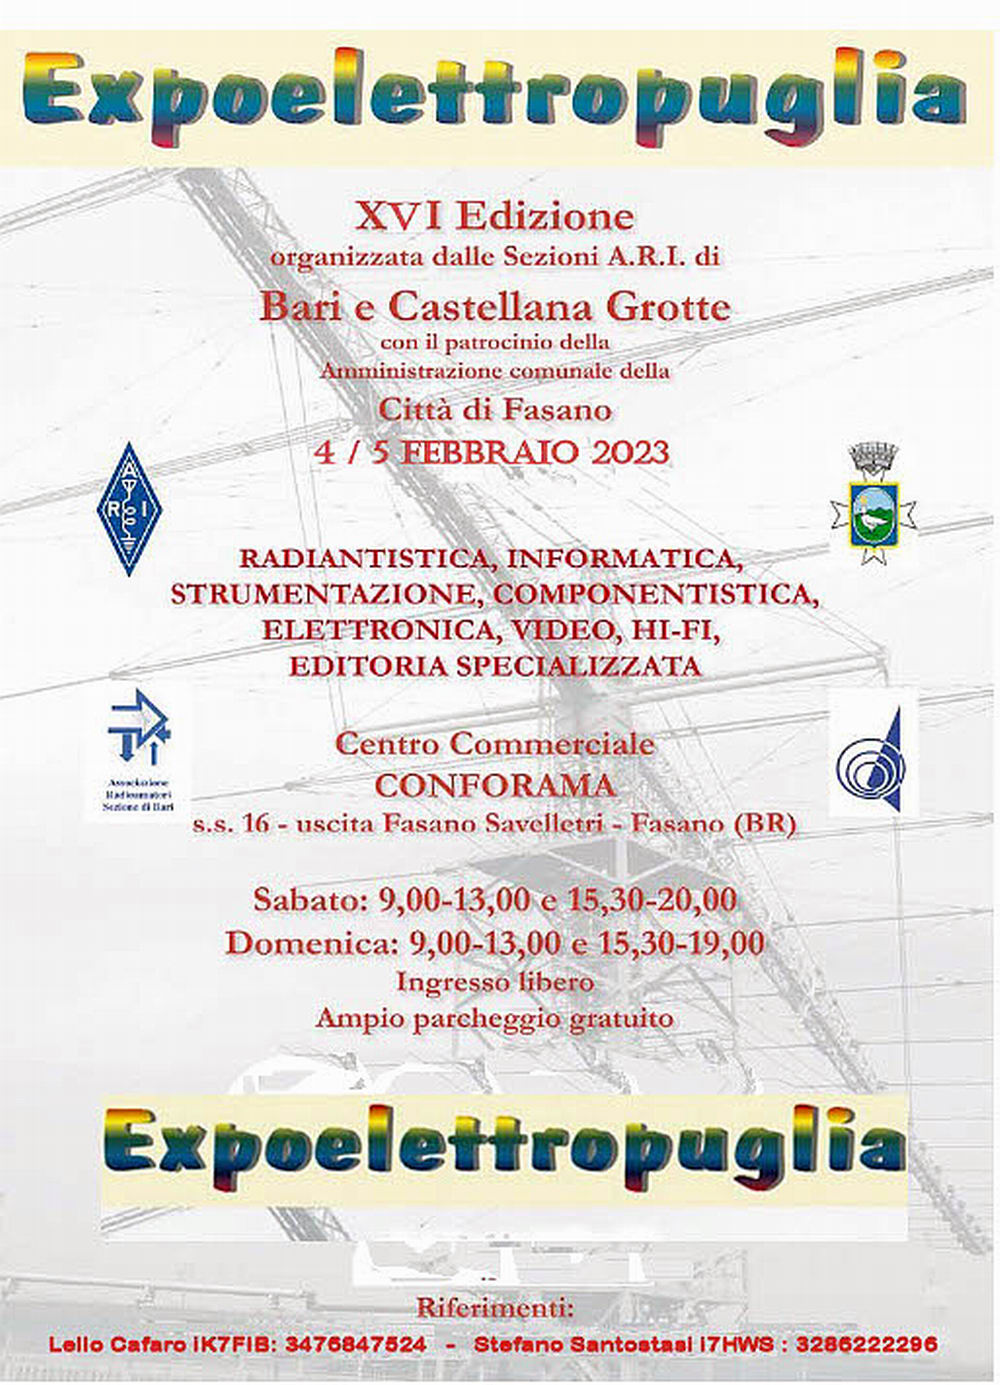 Expoelettropuglia_2023_Locandina_ADIA_Forum_Astronomia_1000.jpg